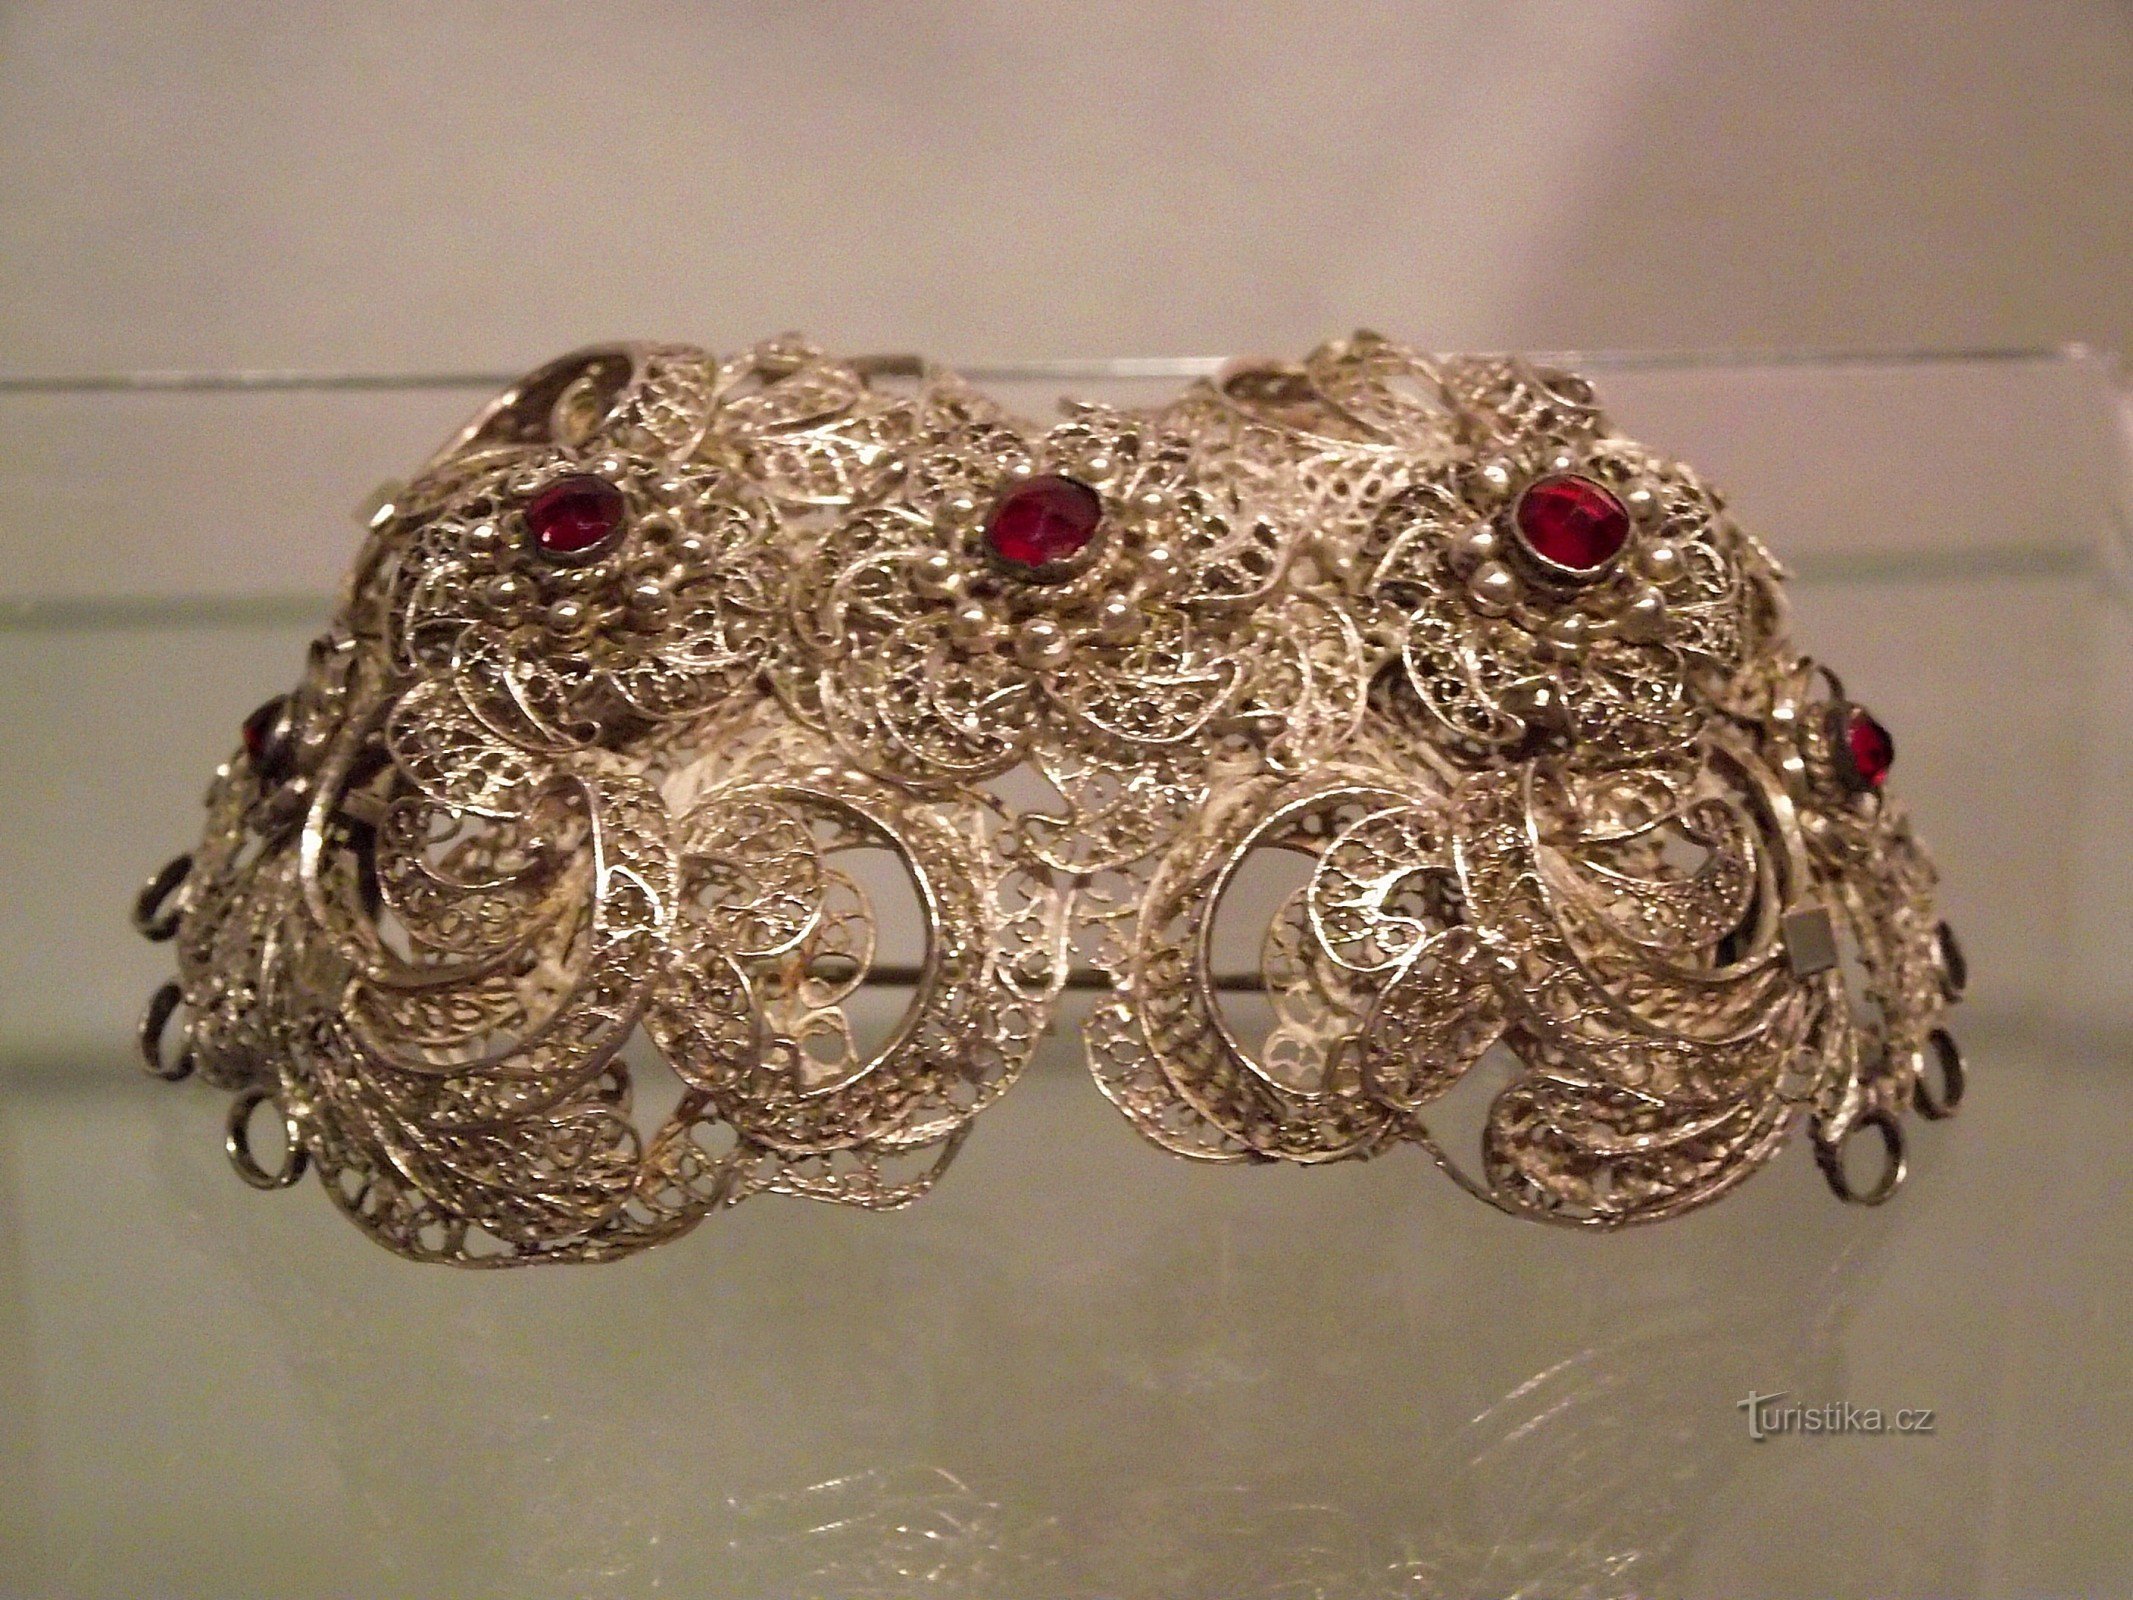 シュンペルク博物館の宝石箱 (VM Šumperk)